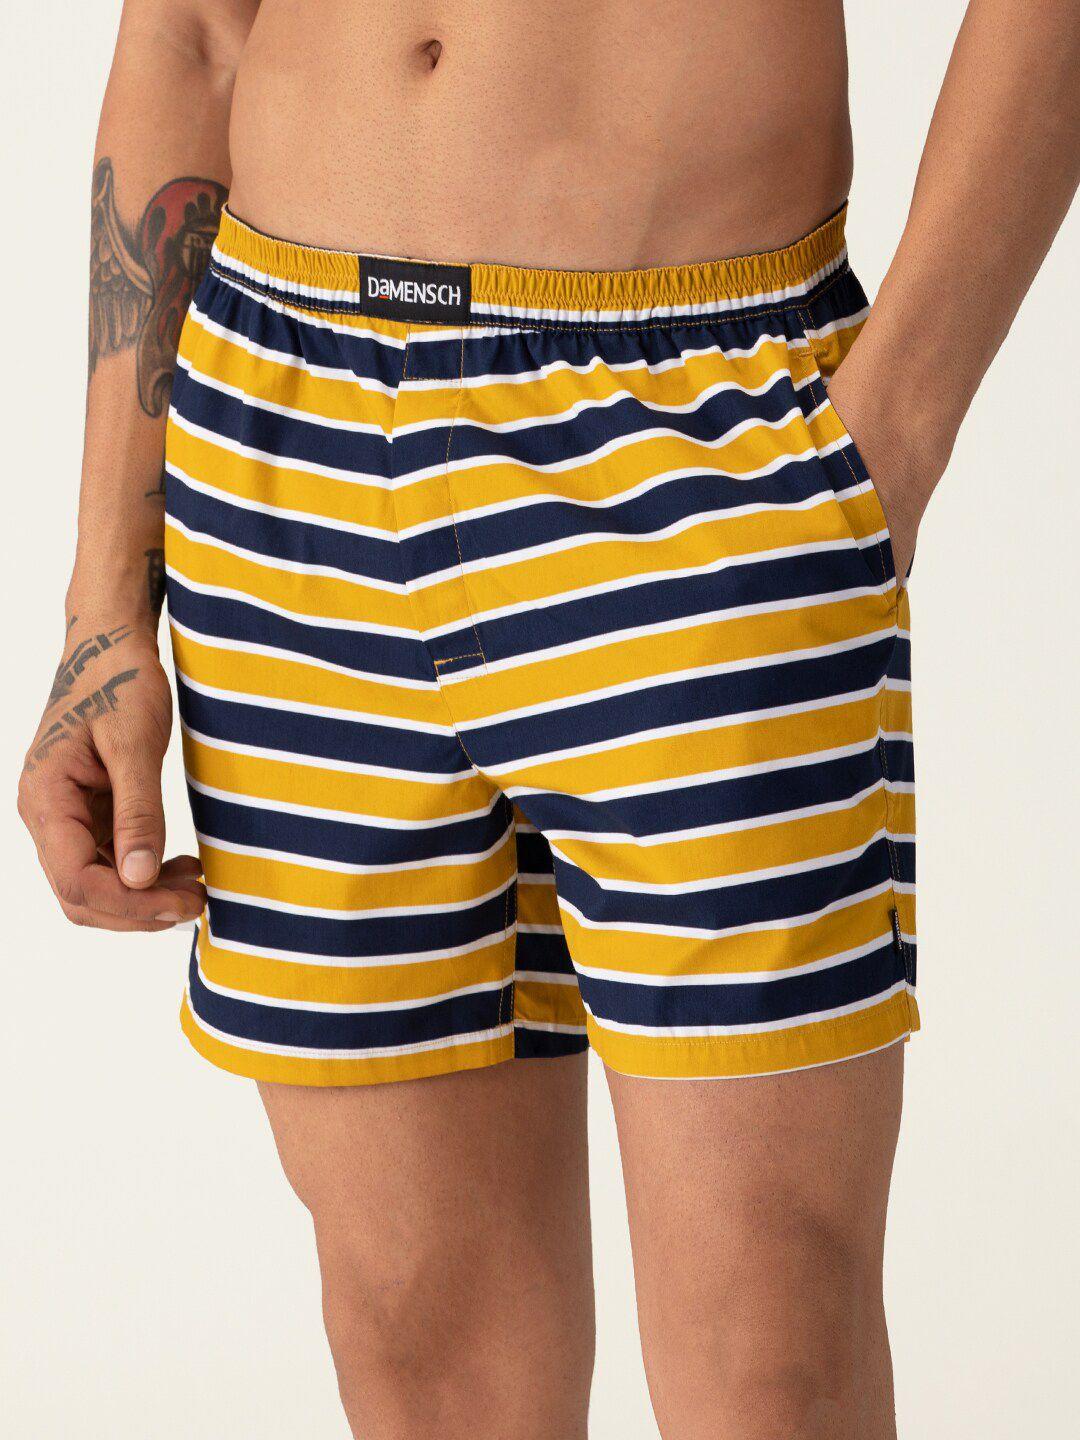 damensch breeeze men yellow & navy blue striped pure cotton ultra-light boxers